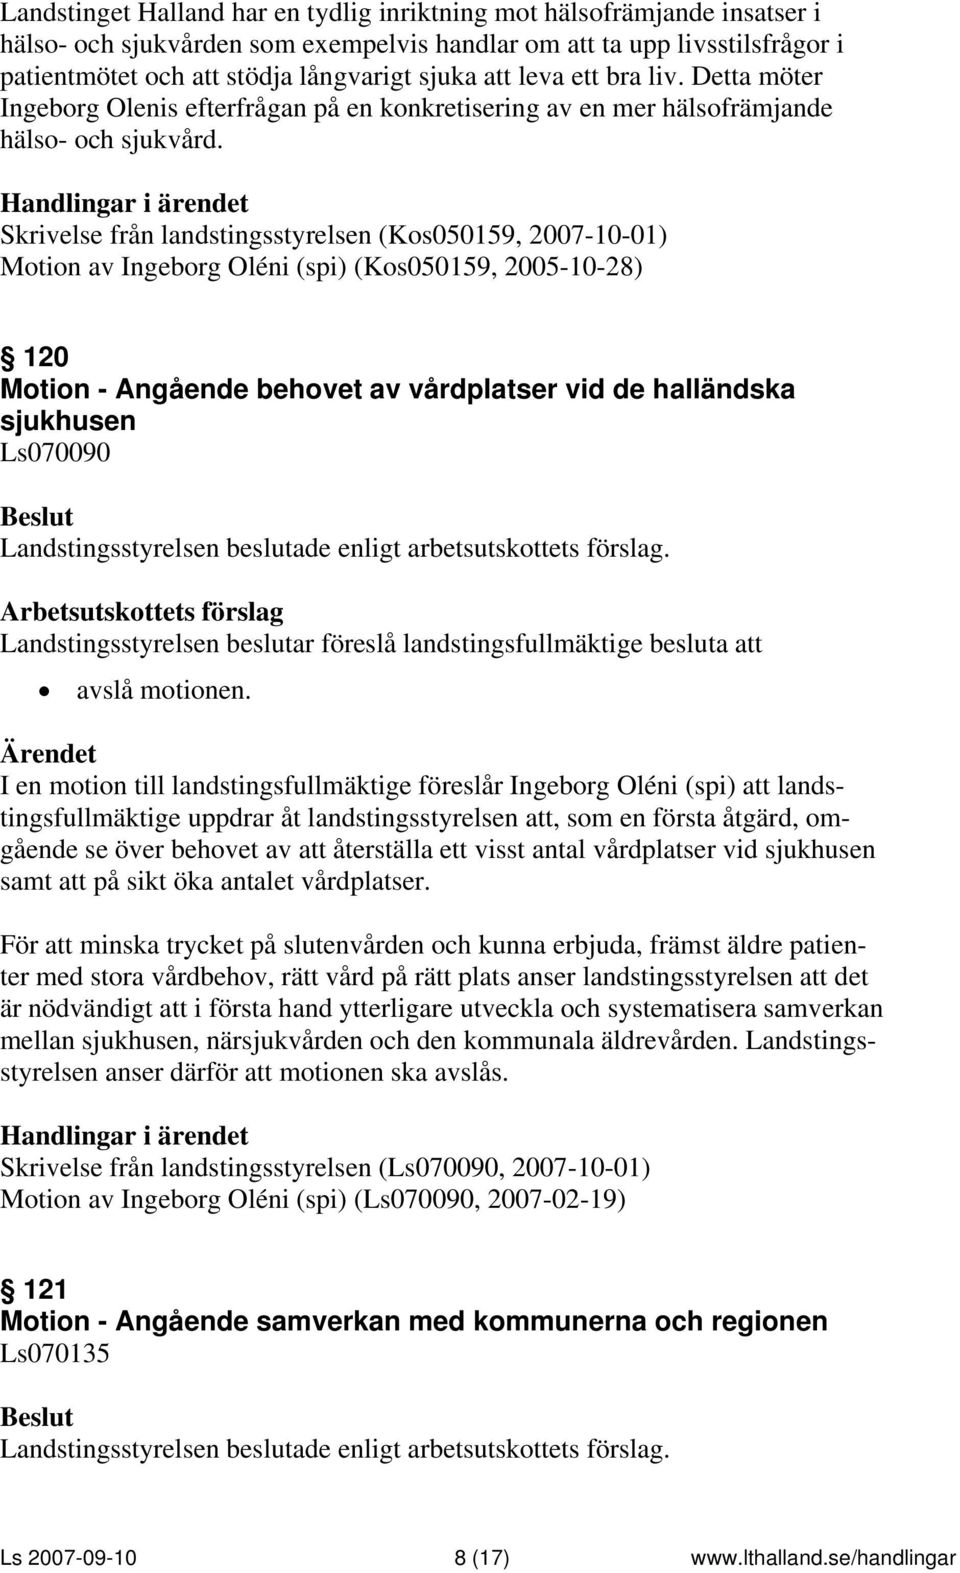 Skrivelse från landstingsstyrelsen (Kos050159, 2007-10-01) Motion av Ingeborg Oléni (spi) (Kos050159, 2005-10-28) 120 Motion - Angående behovet av vårdplatser vid de halländska sjukhusen Ls070090